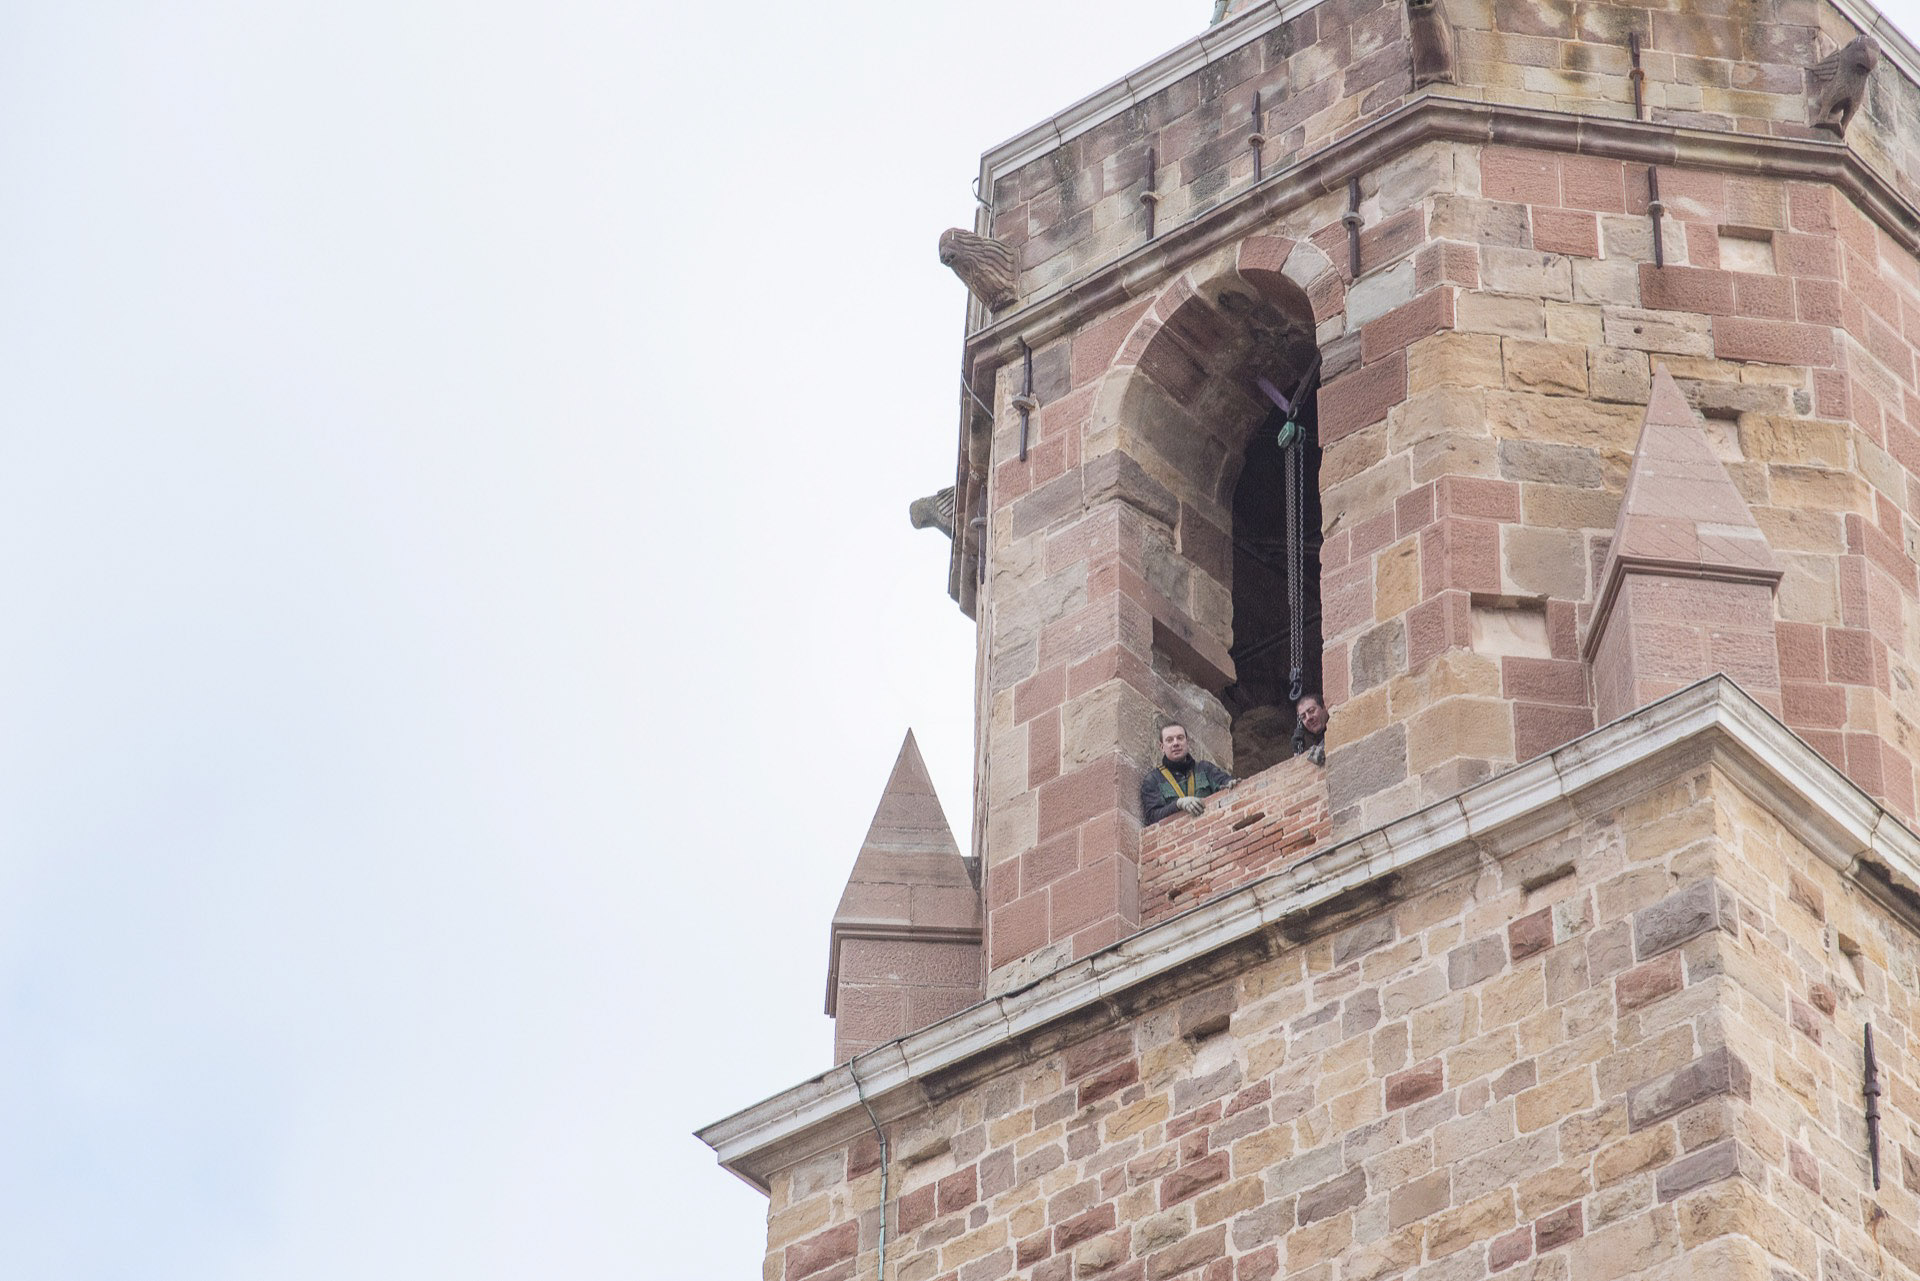 Dépose pour restauration des 4 cloches de la cathédrale de Fréjus